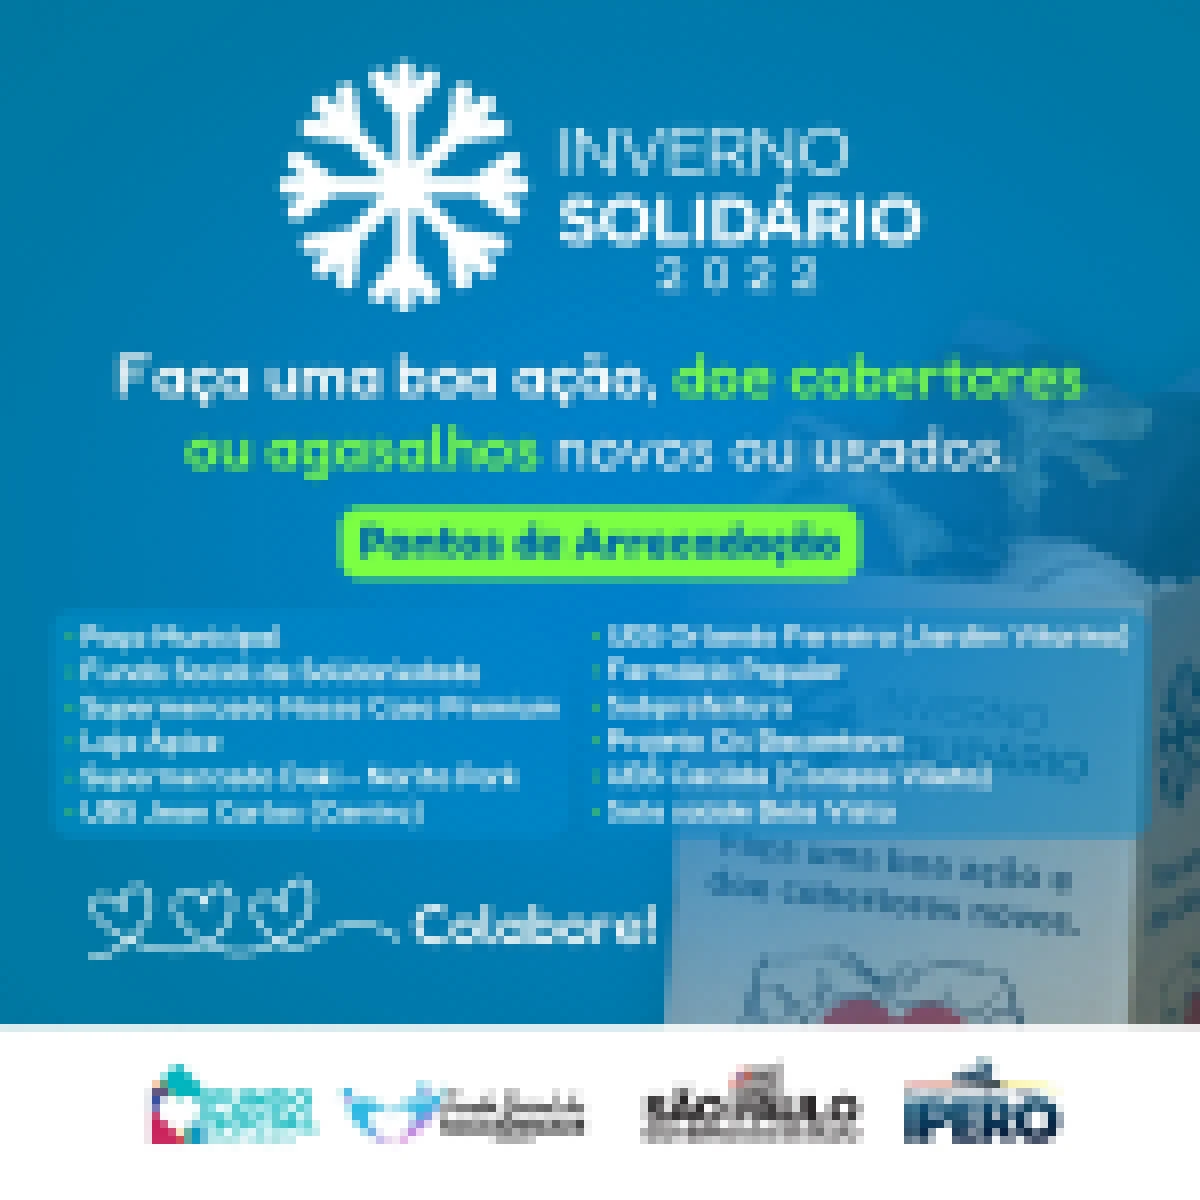 Campanha Inverno Solidário 2022 Inicia em Iperó